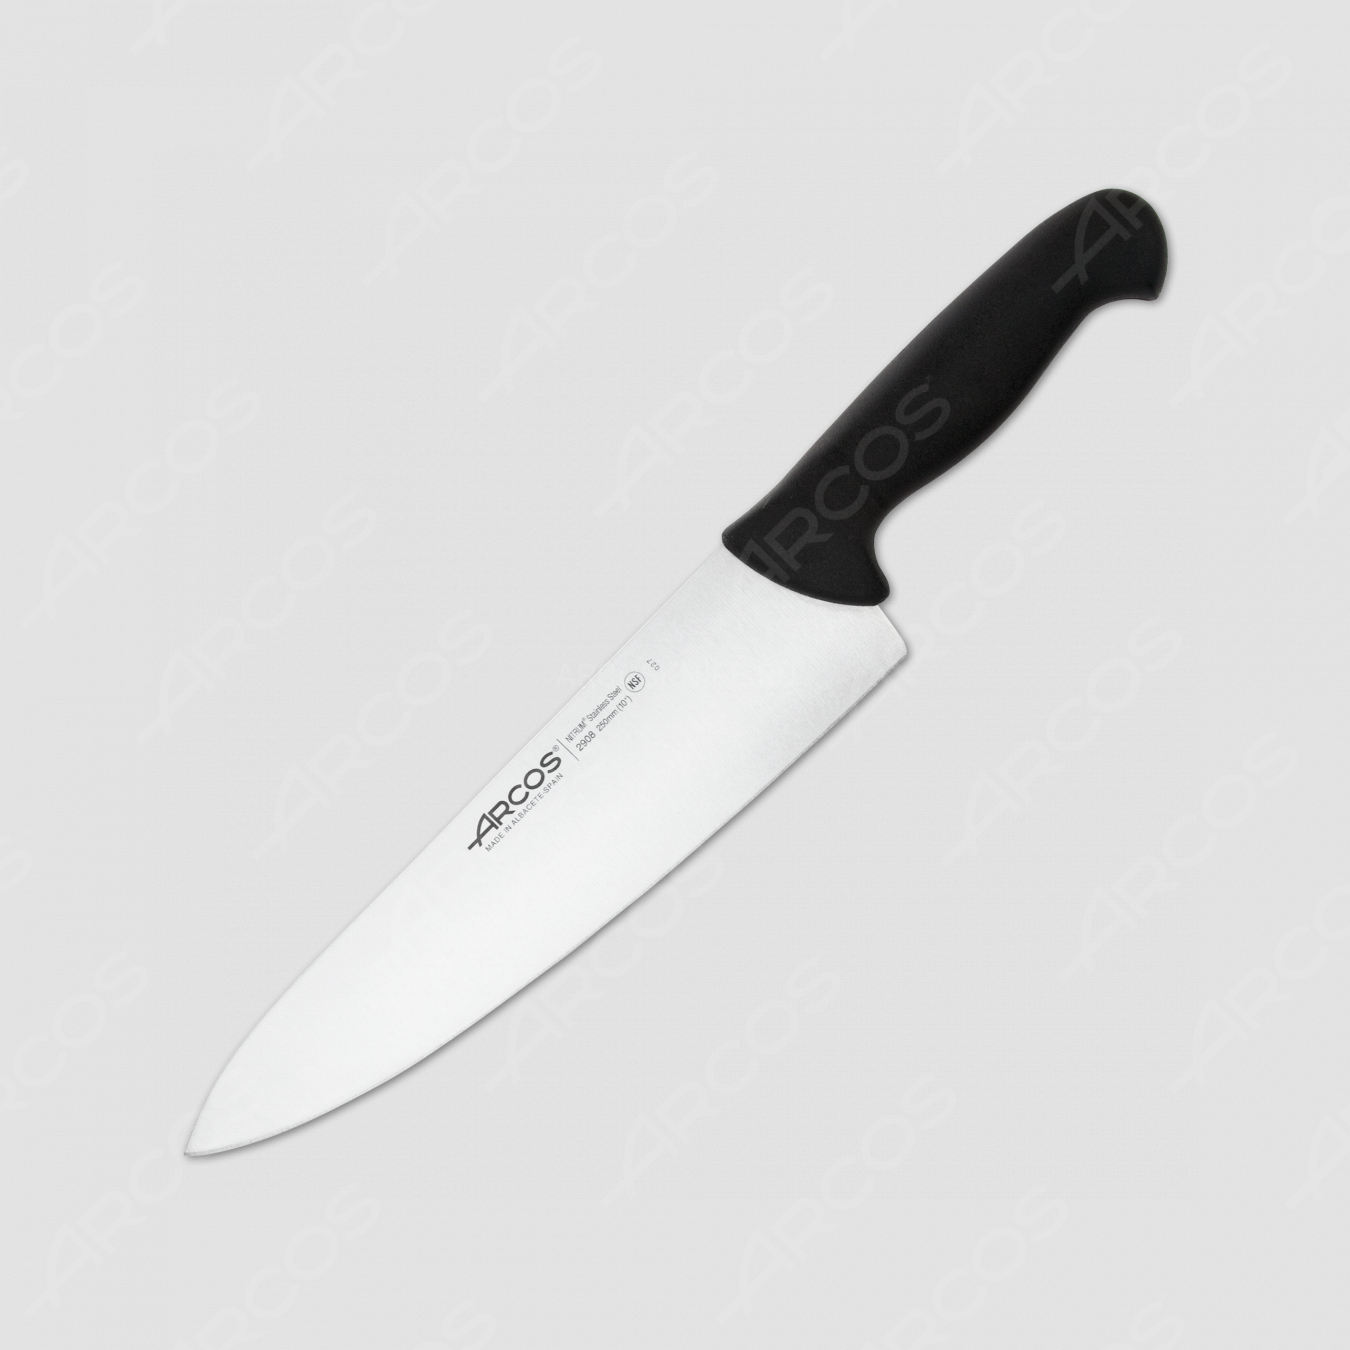 Профессиональный поварской кухонный нож 25 см, рукоять - черная, серия 2900, ARCOS, Испания